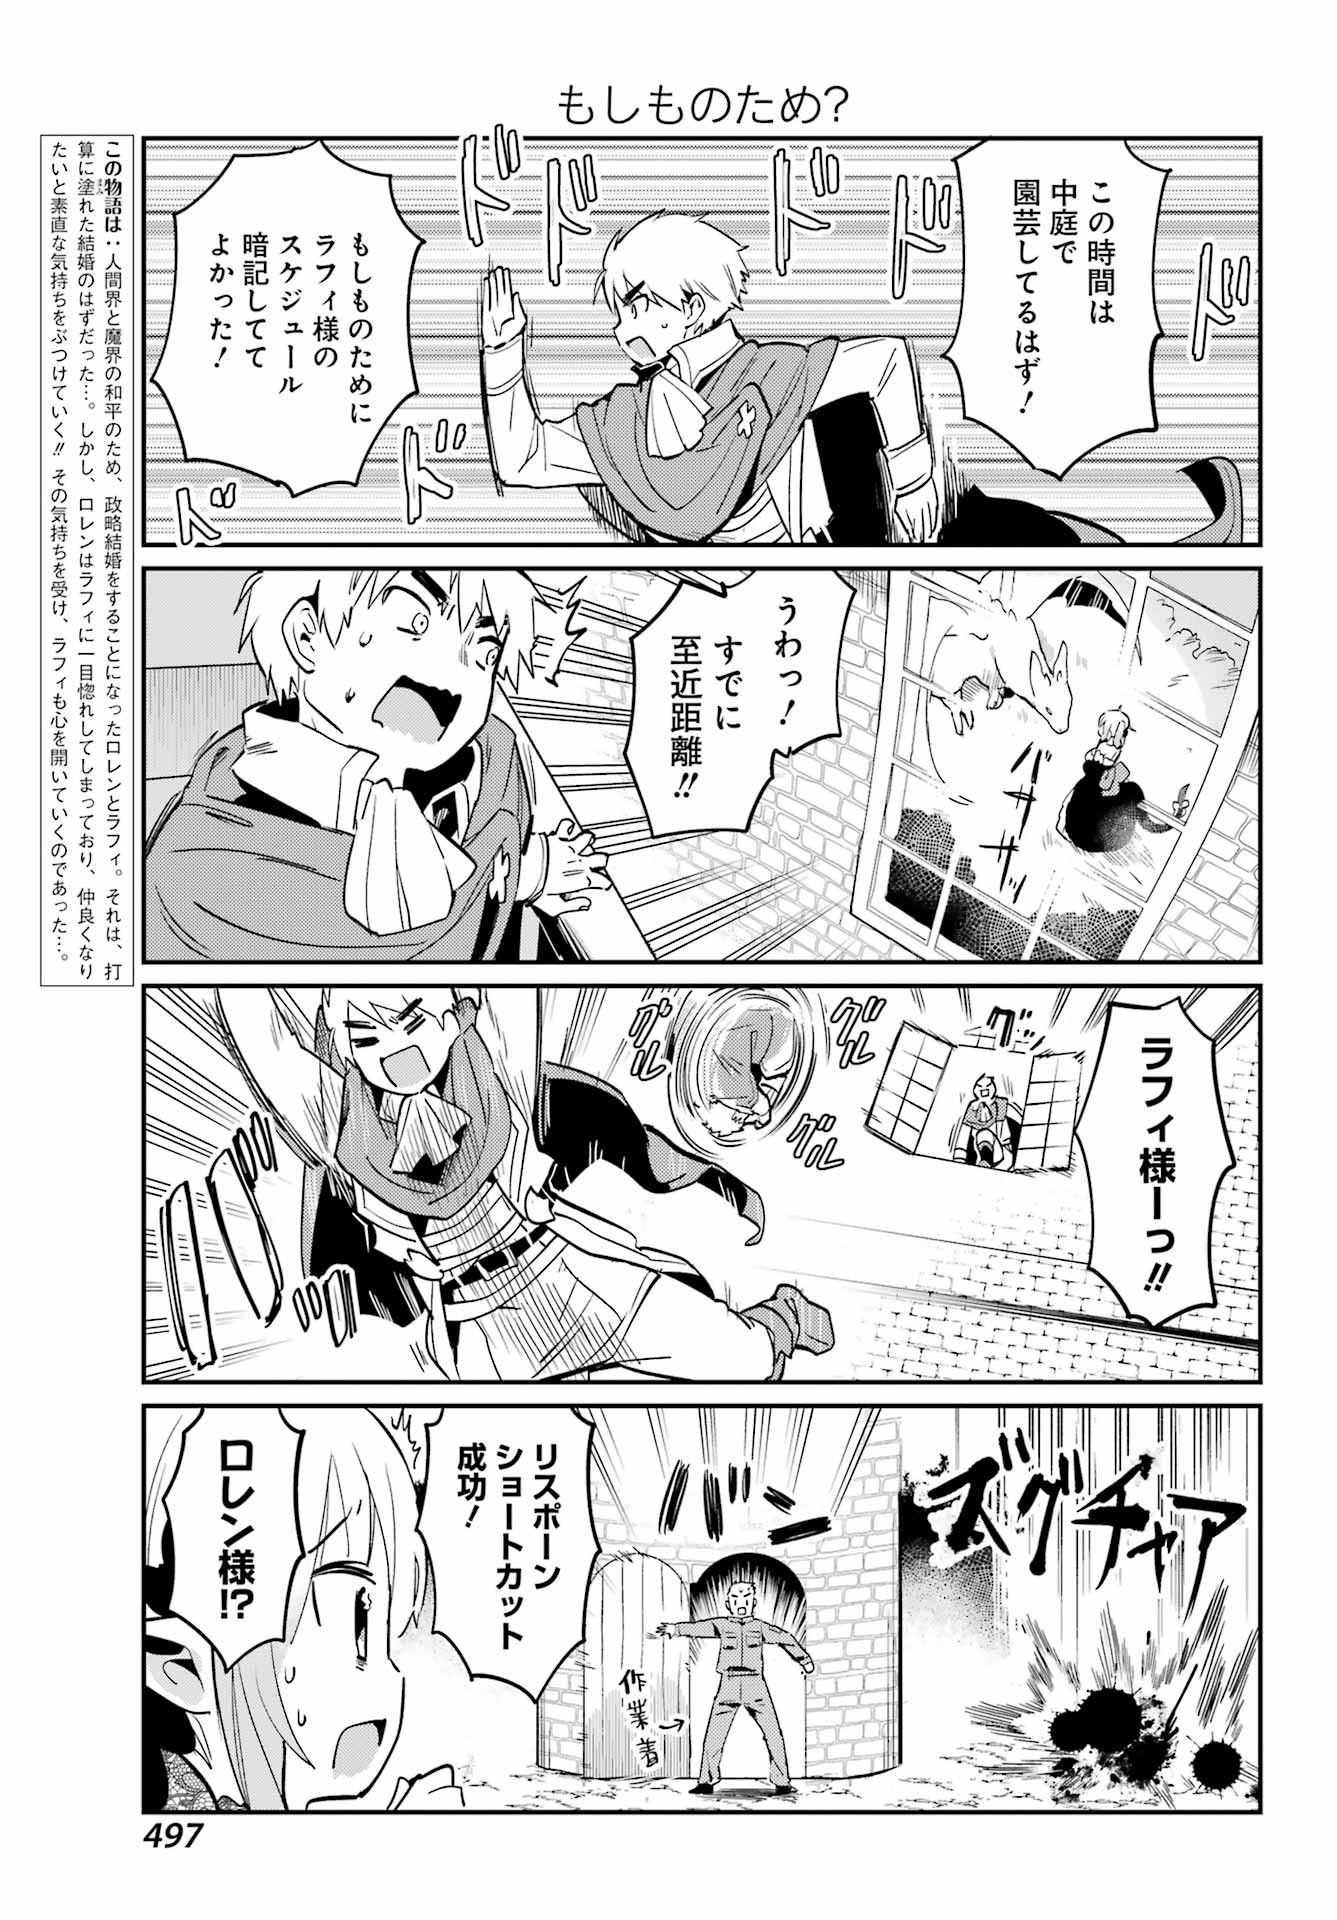 Boku no Dokuhime wa Kyou mo Kawaii - Chapter 16 - Page 3